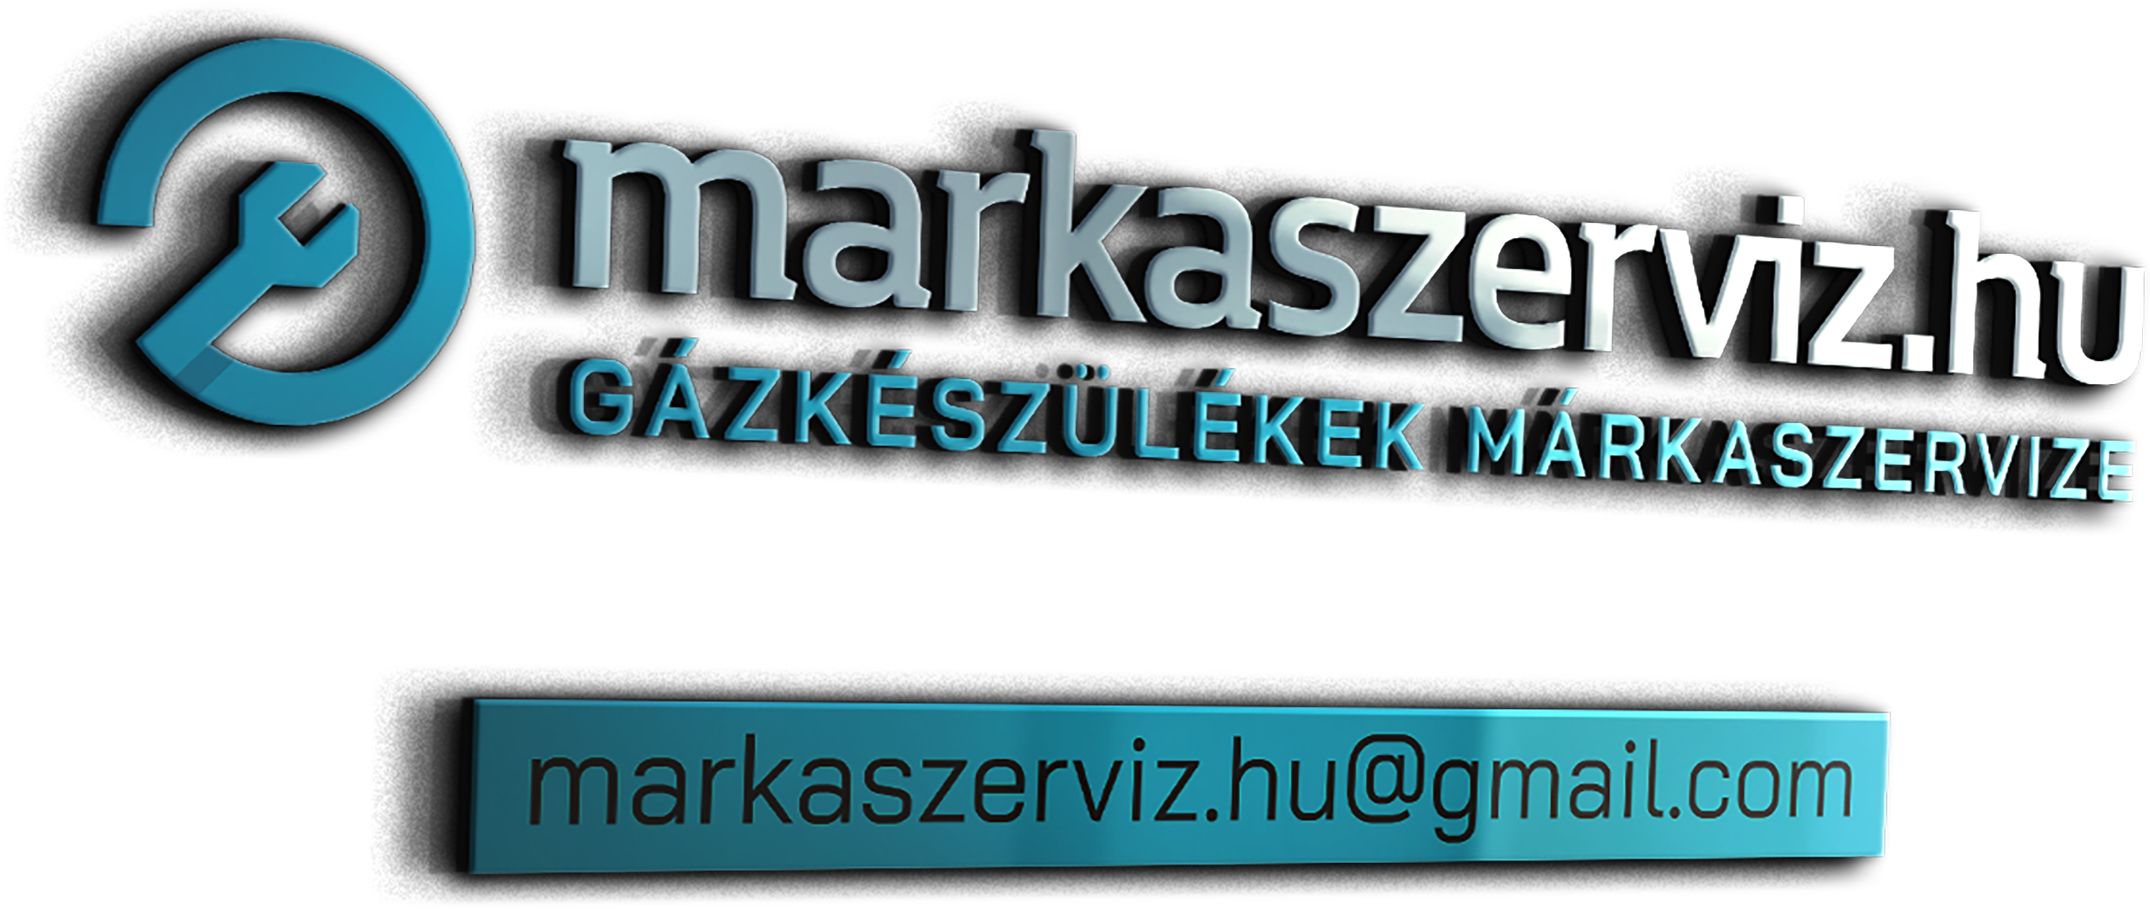 markaszerviz.hu